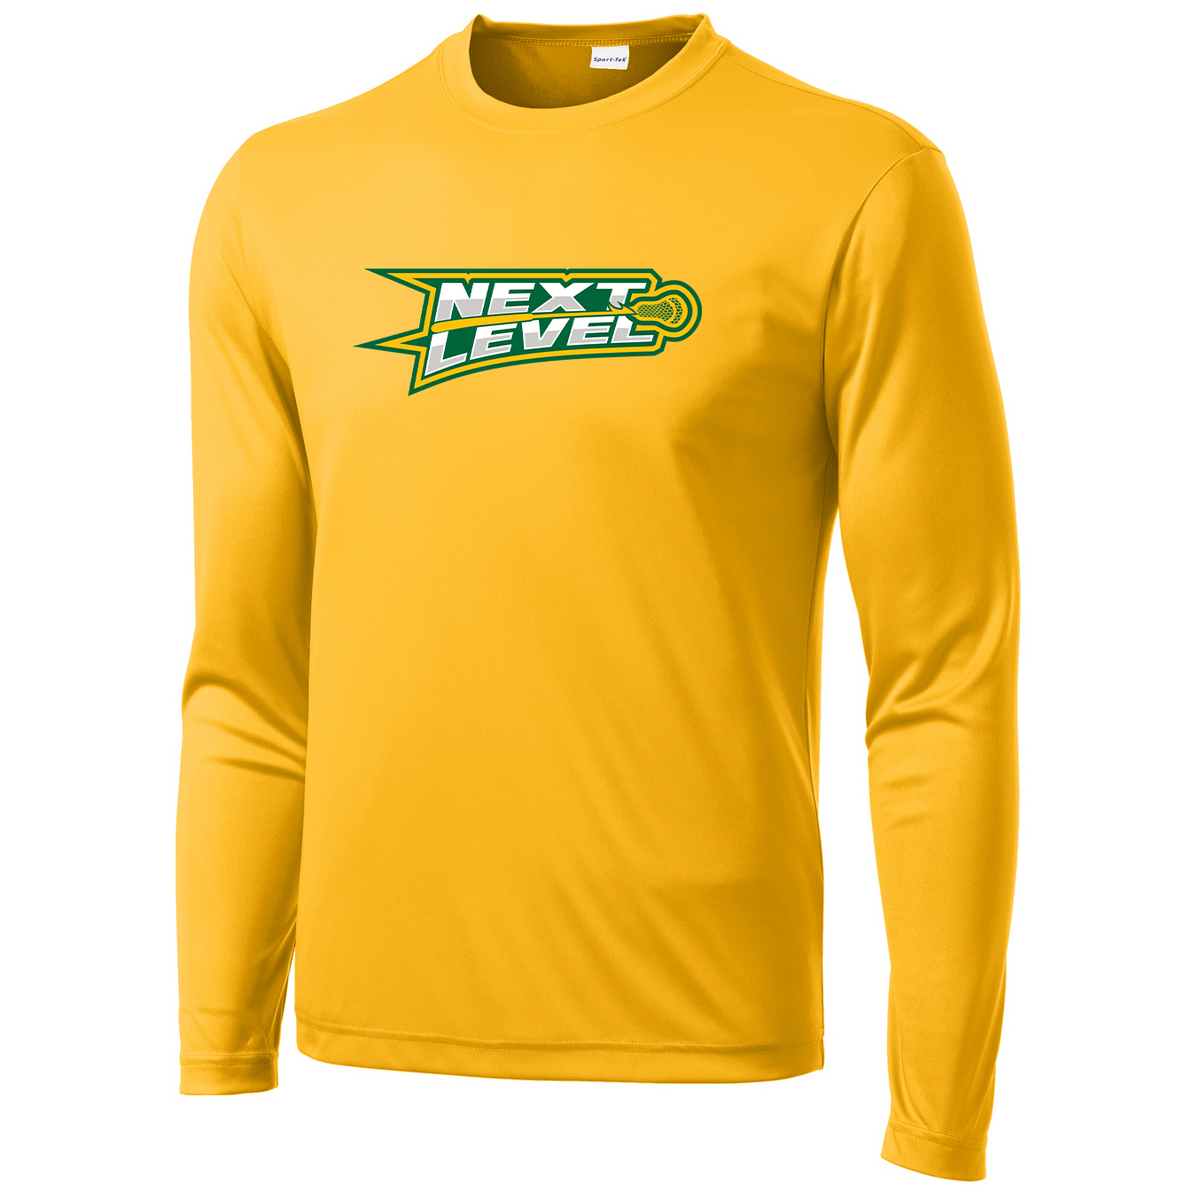 Next Level Northwest Lacrosse Long Sleeve Performance Shirt